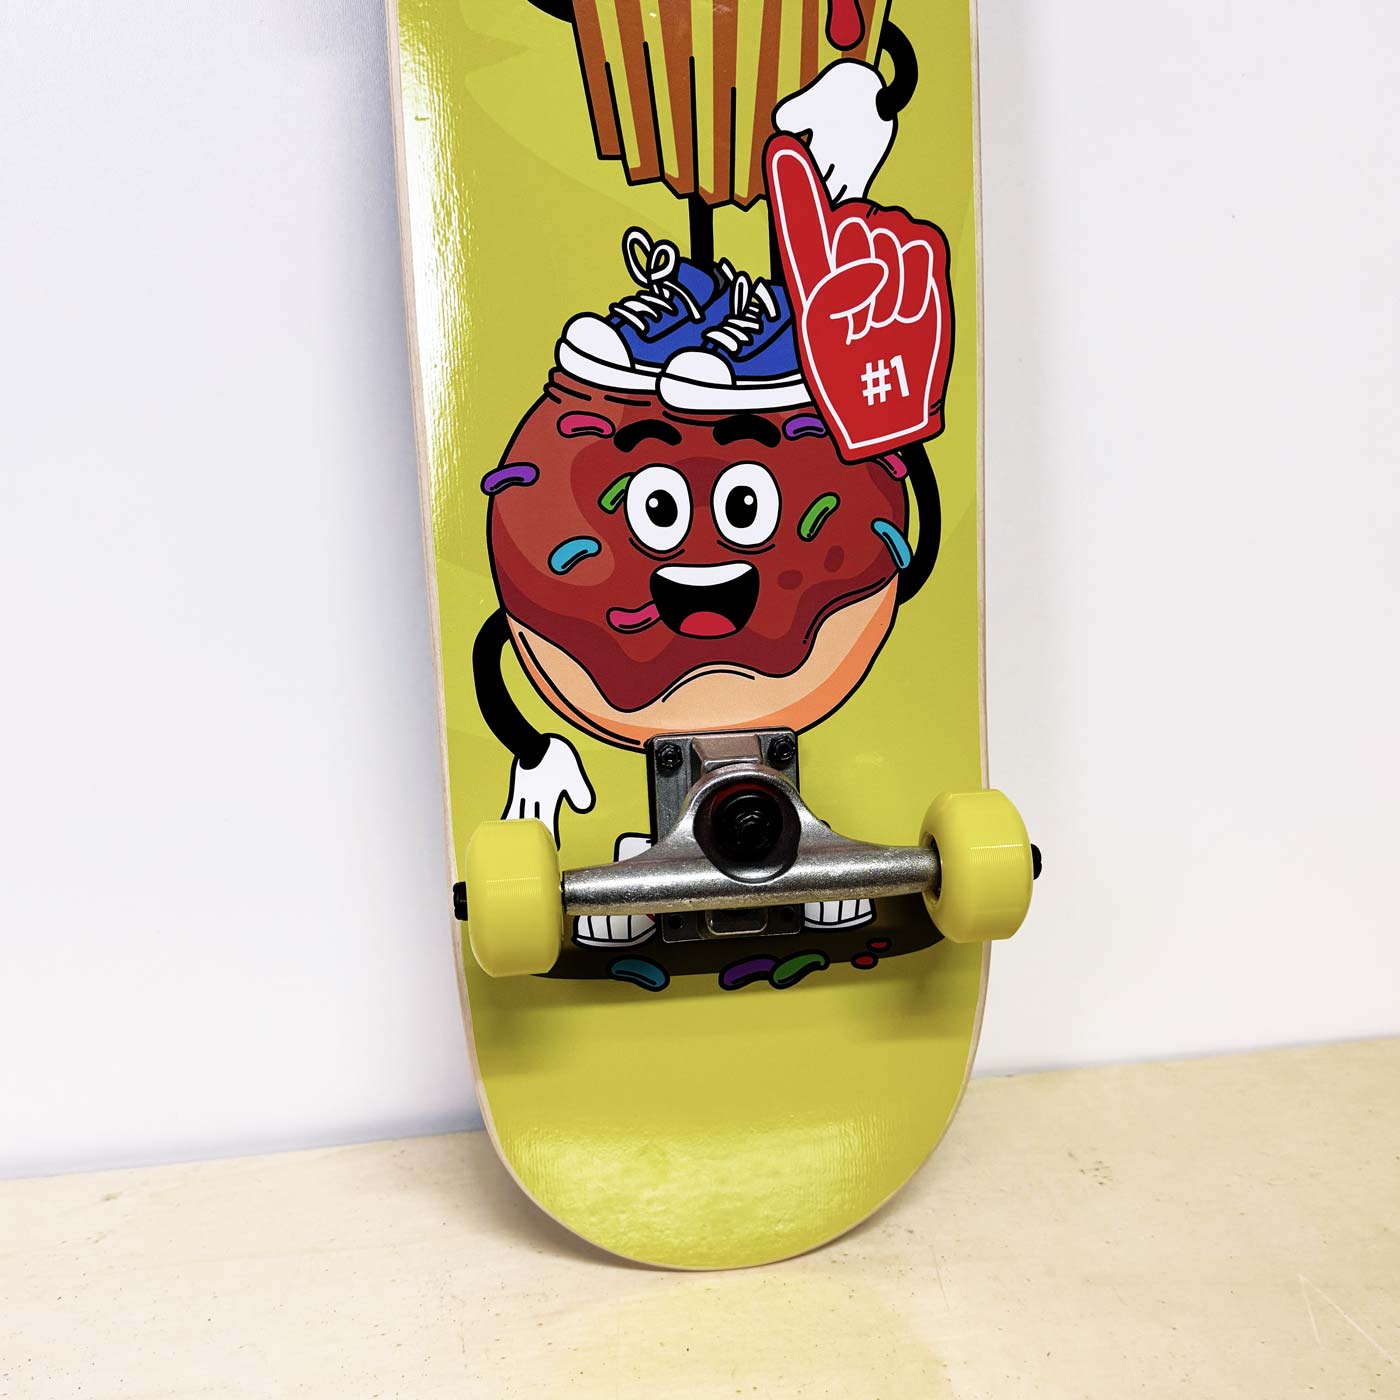 skateboard completo - grafica di un muffin ed altri dolci in stile cartoon - prodotto da algal board